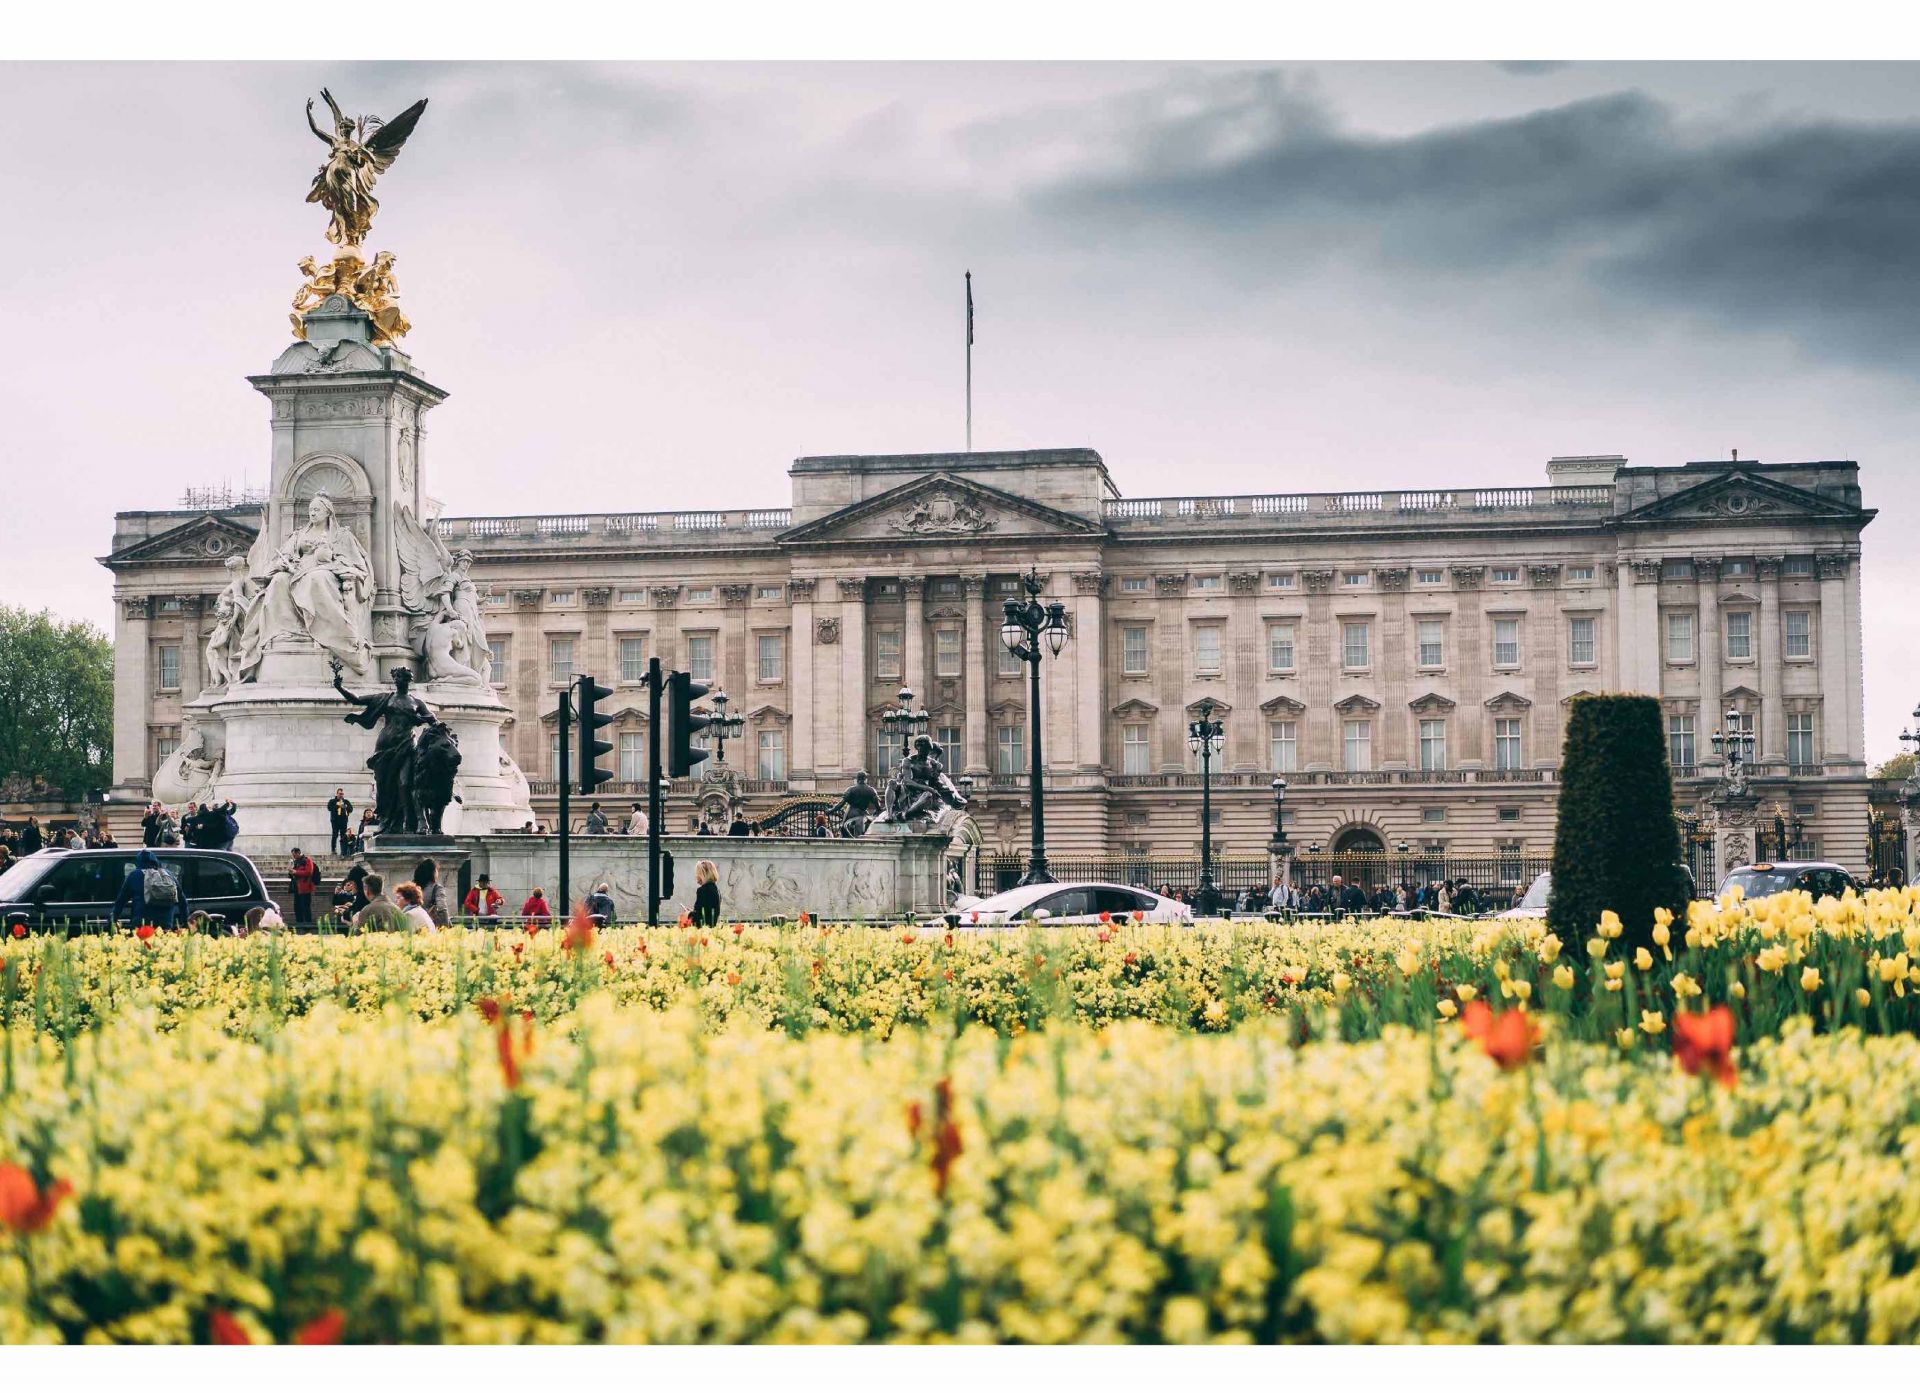 5 TIPs Du Lịch Cung Điện Hoàng Gia Anh – Buckingham Palace